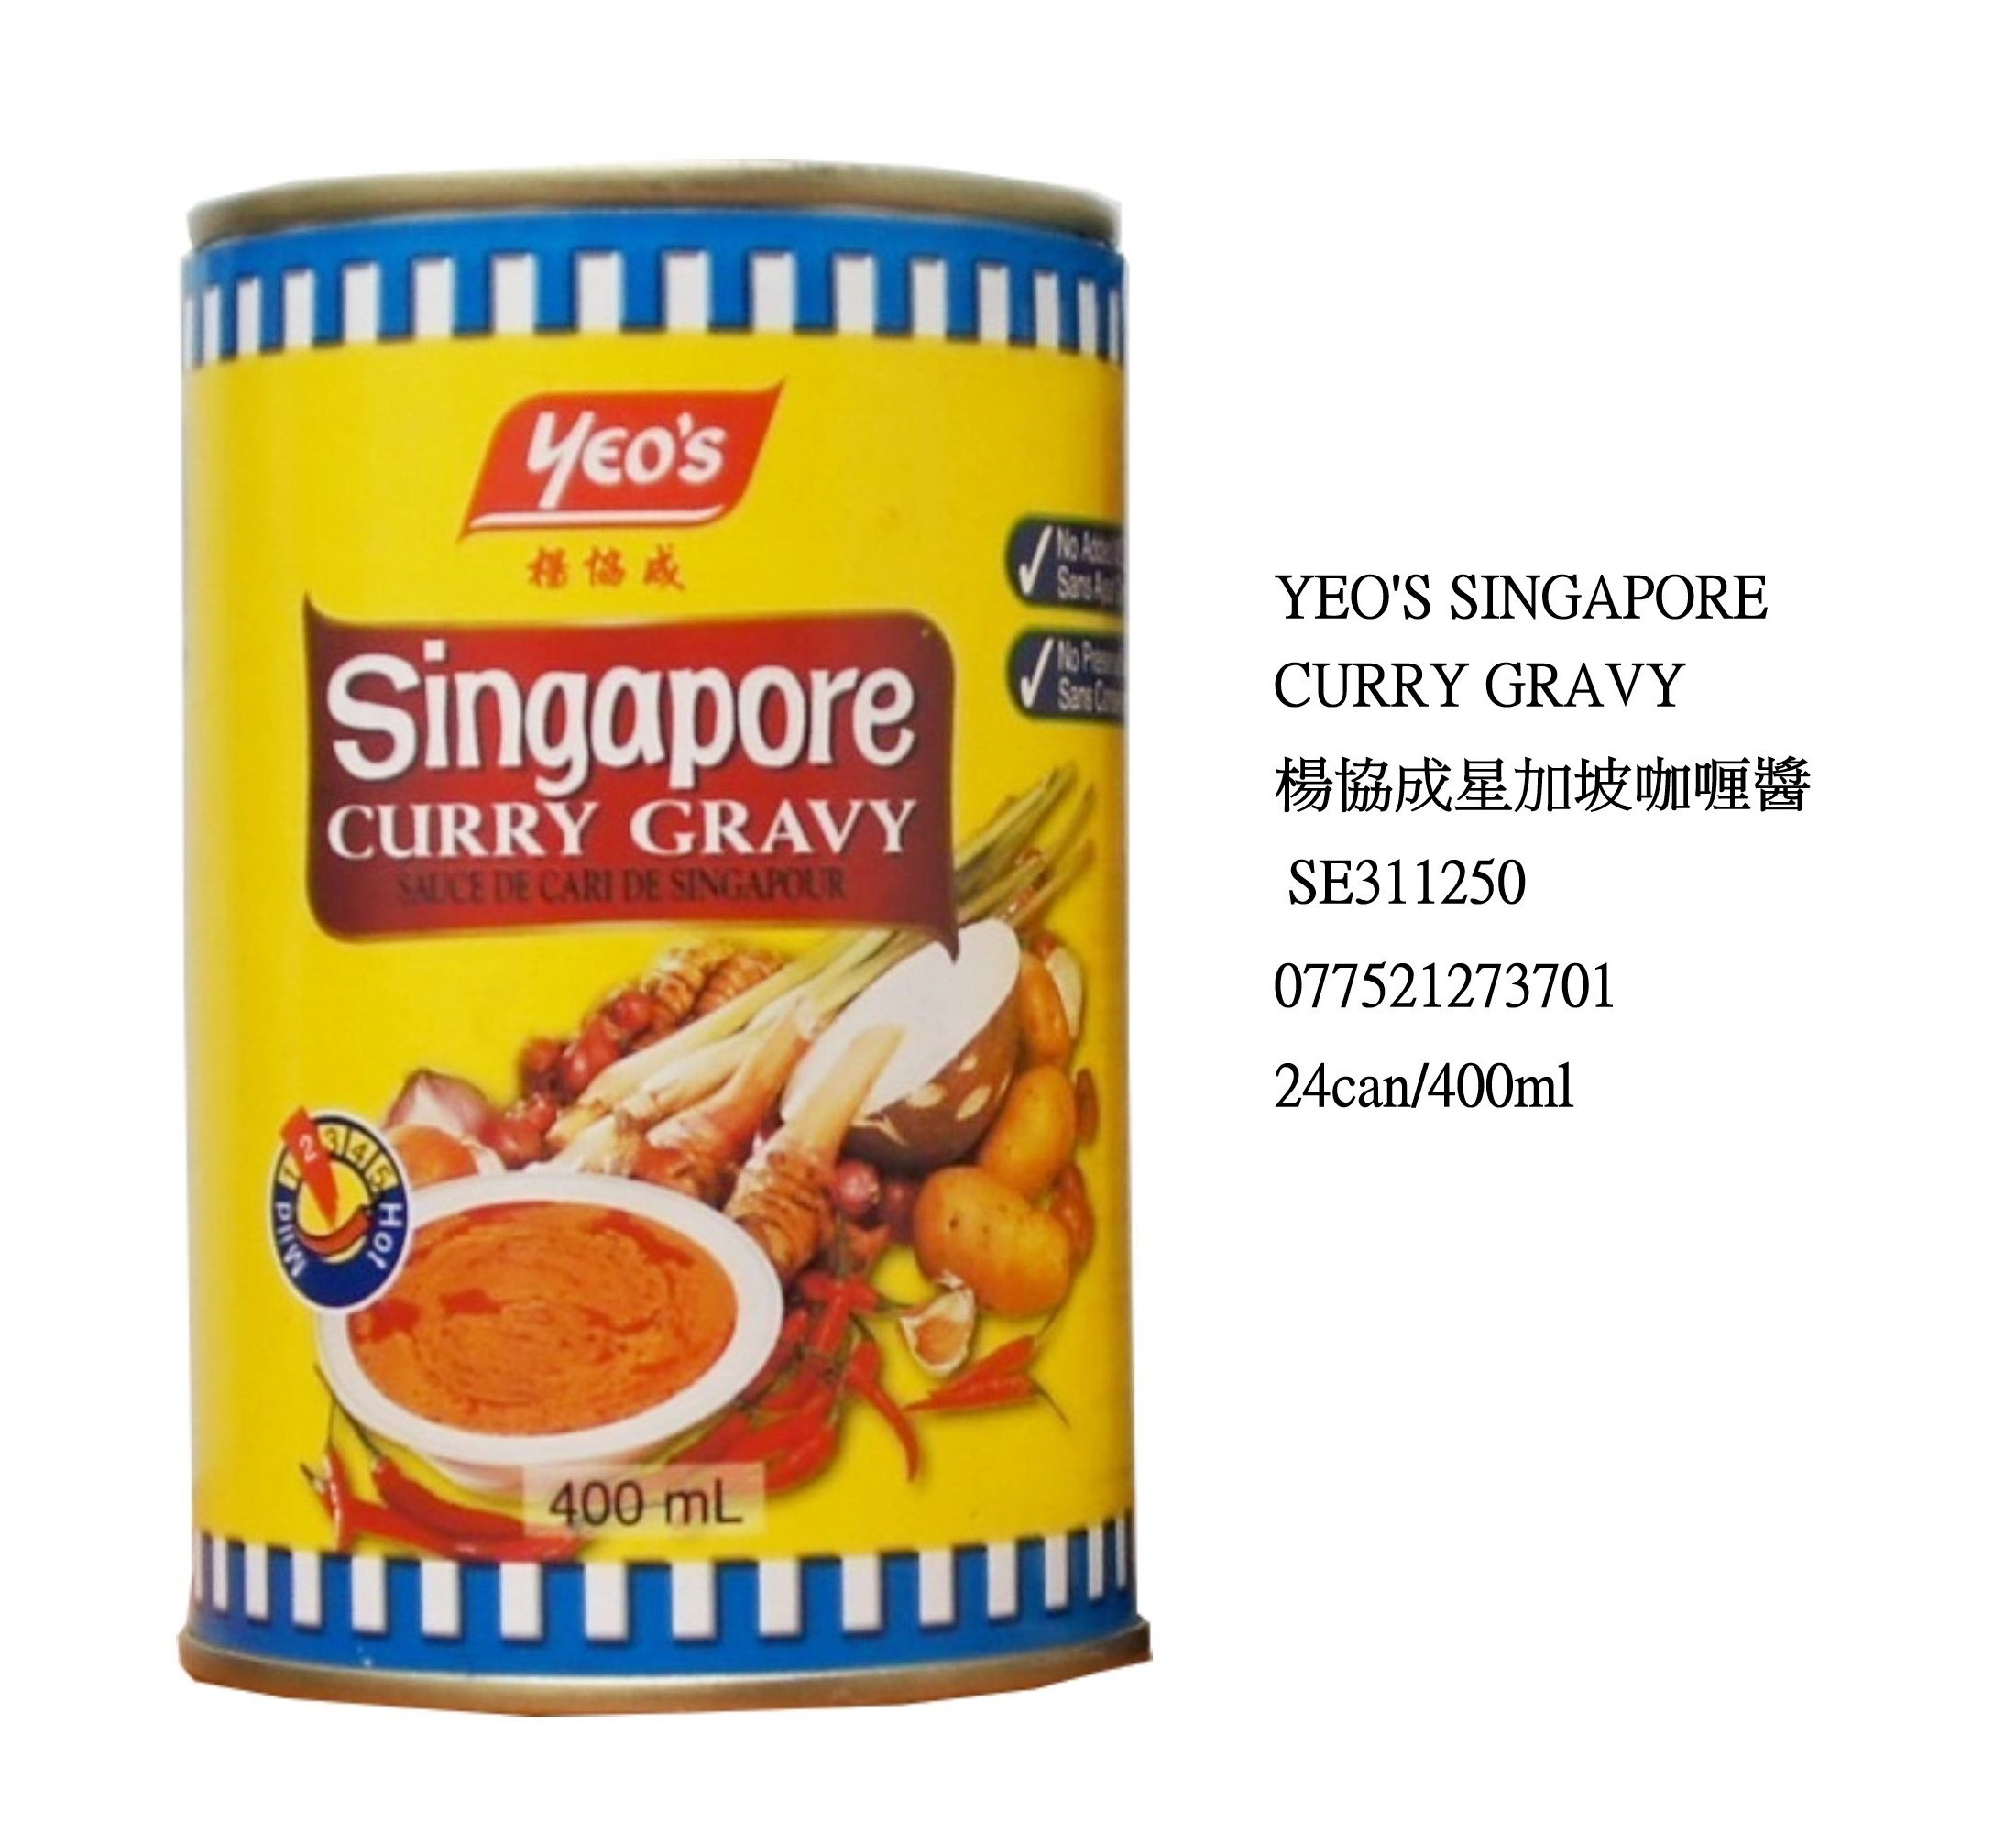 YEO'S SINGAPORE CURRY GRAVY SE311250